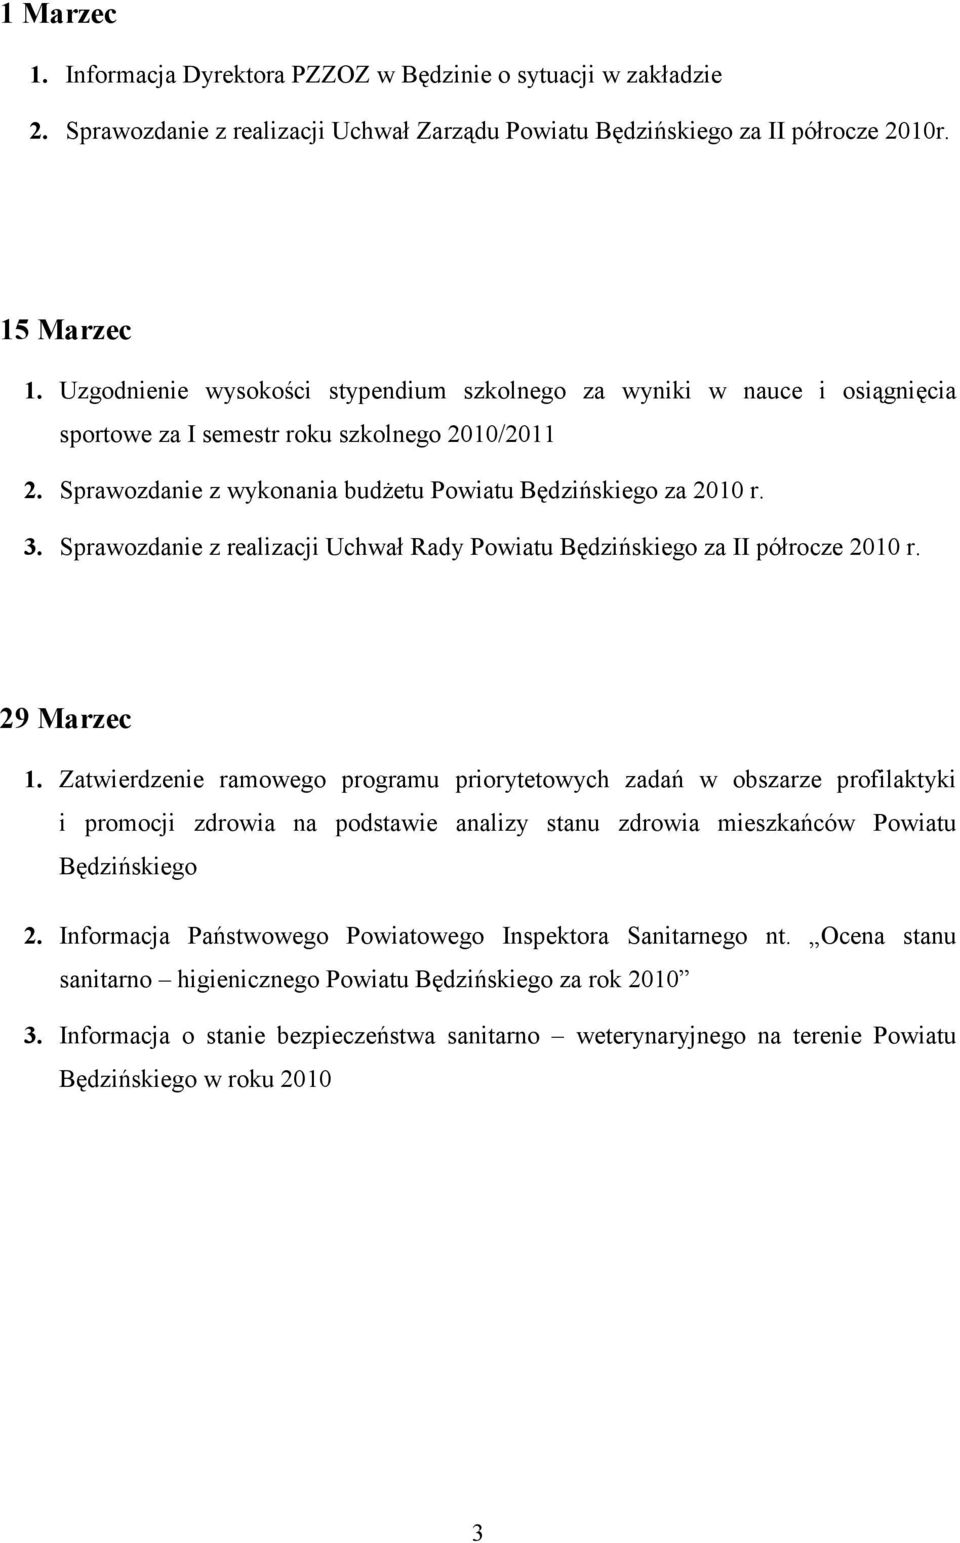 Sprawozdanie z realizacji Uchwał Rady Powiatu Będzińskiego za II półrocze 2010 r. 29 Marzec 1.